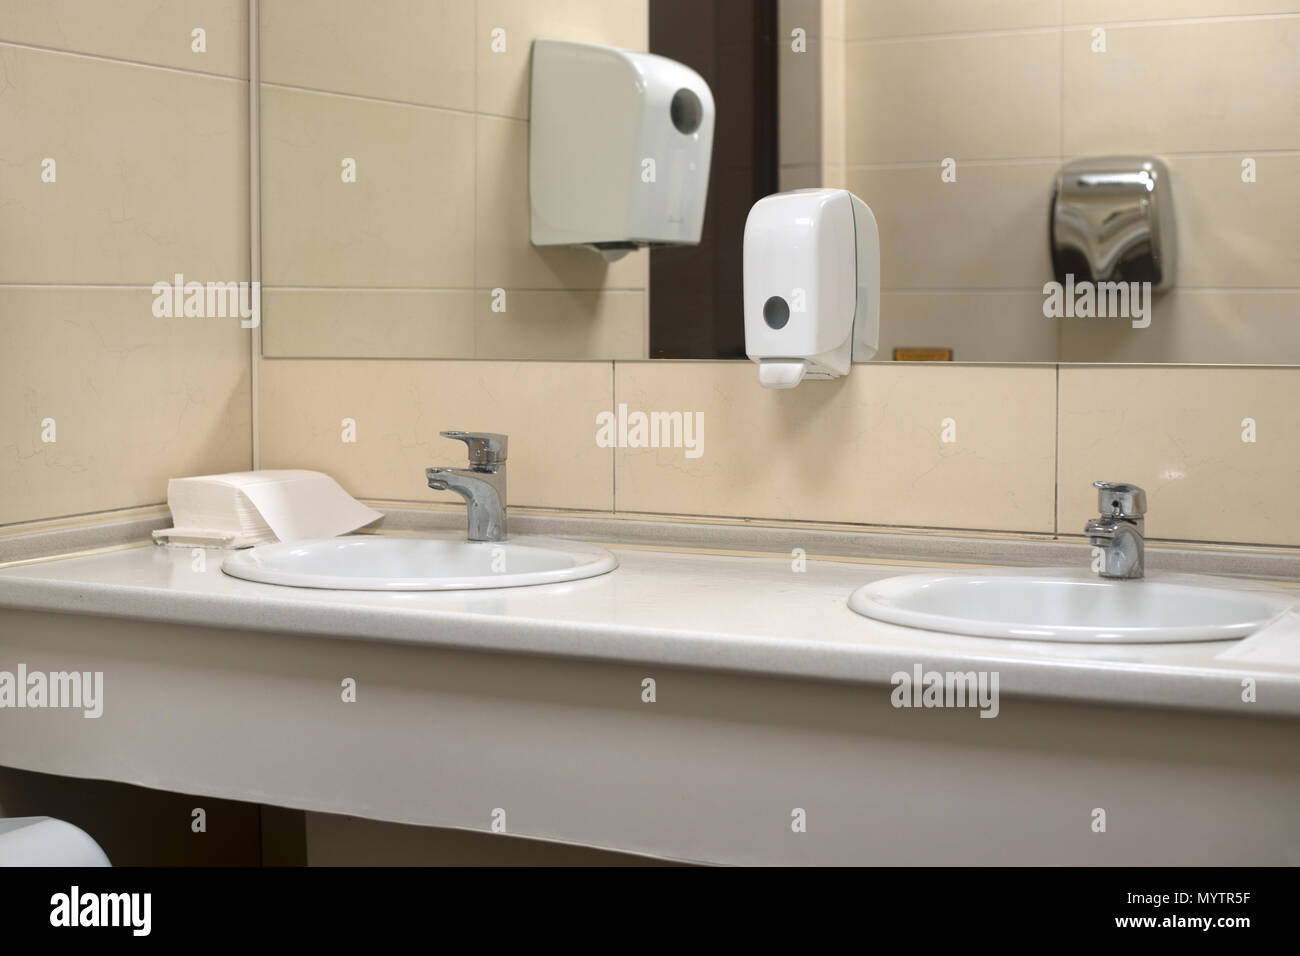 Espejo lavamanos escuela fotografías e imágenes de alta resolución - Alamy